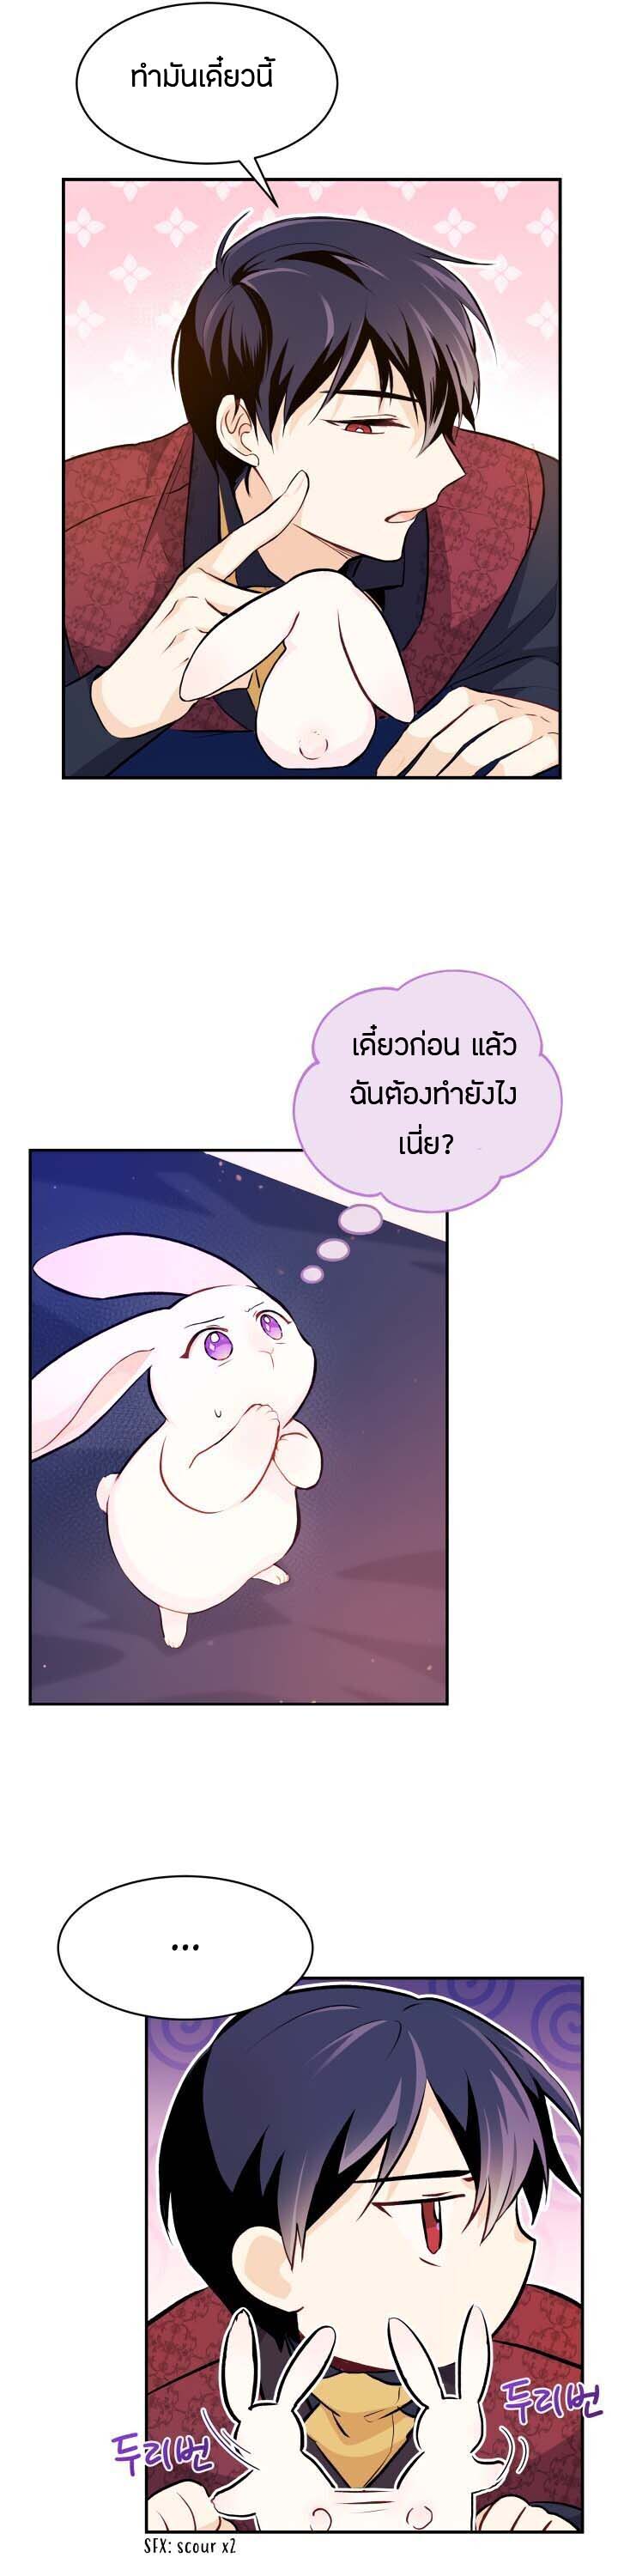 rabbit5 49